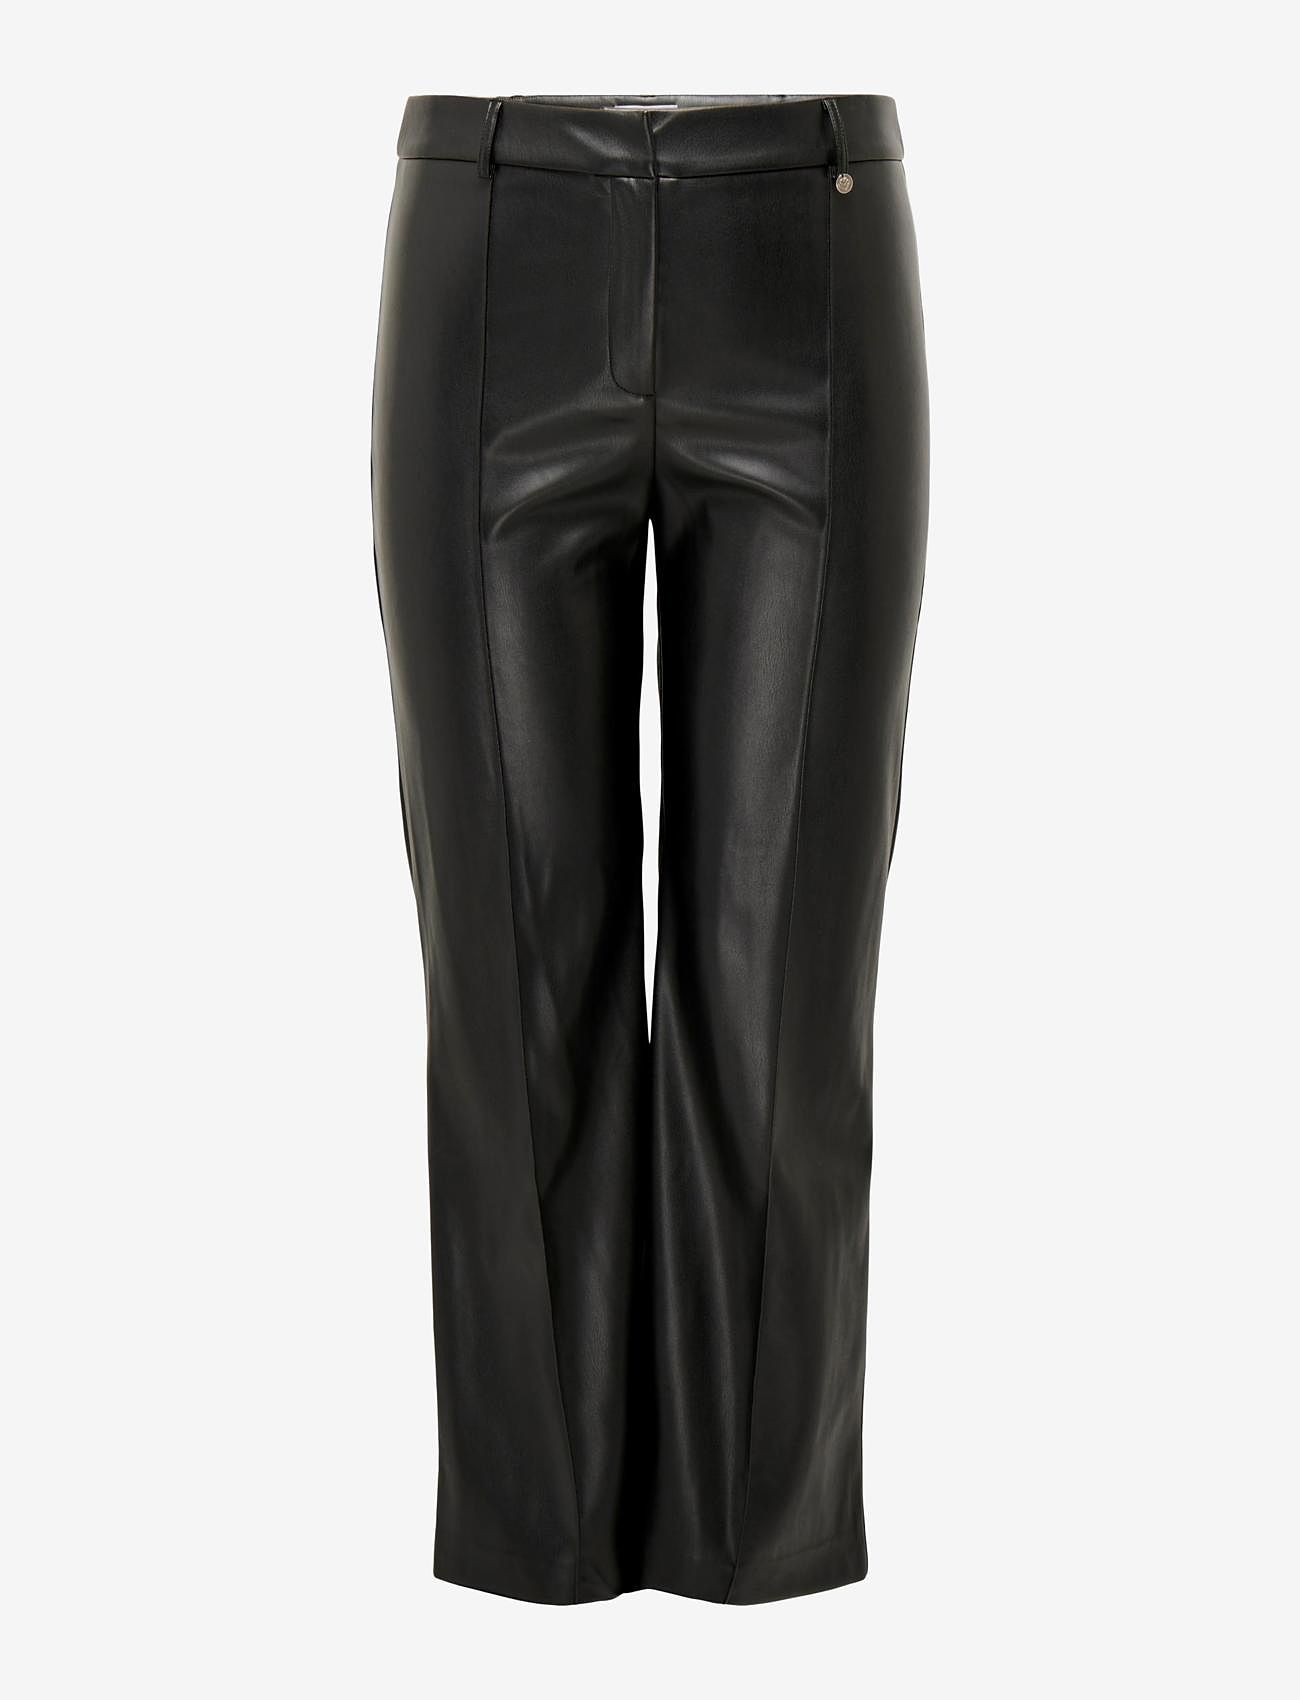 ONLY Carmakoma - CARBLAKE MW FLARED PIN FAUX LEA PANT - odzież imprezowa w cenach outletowych - black - 0